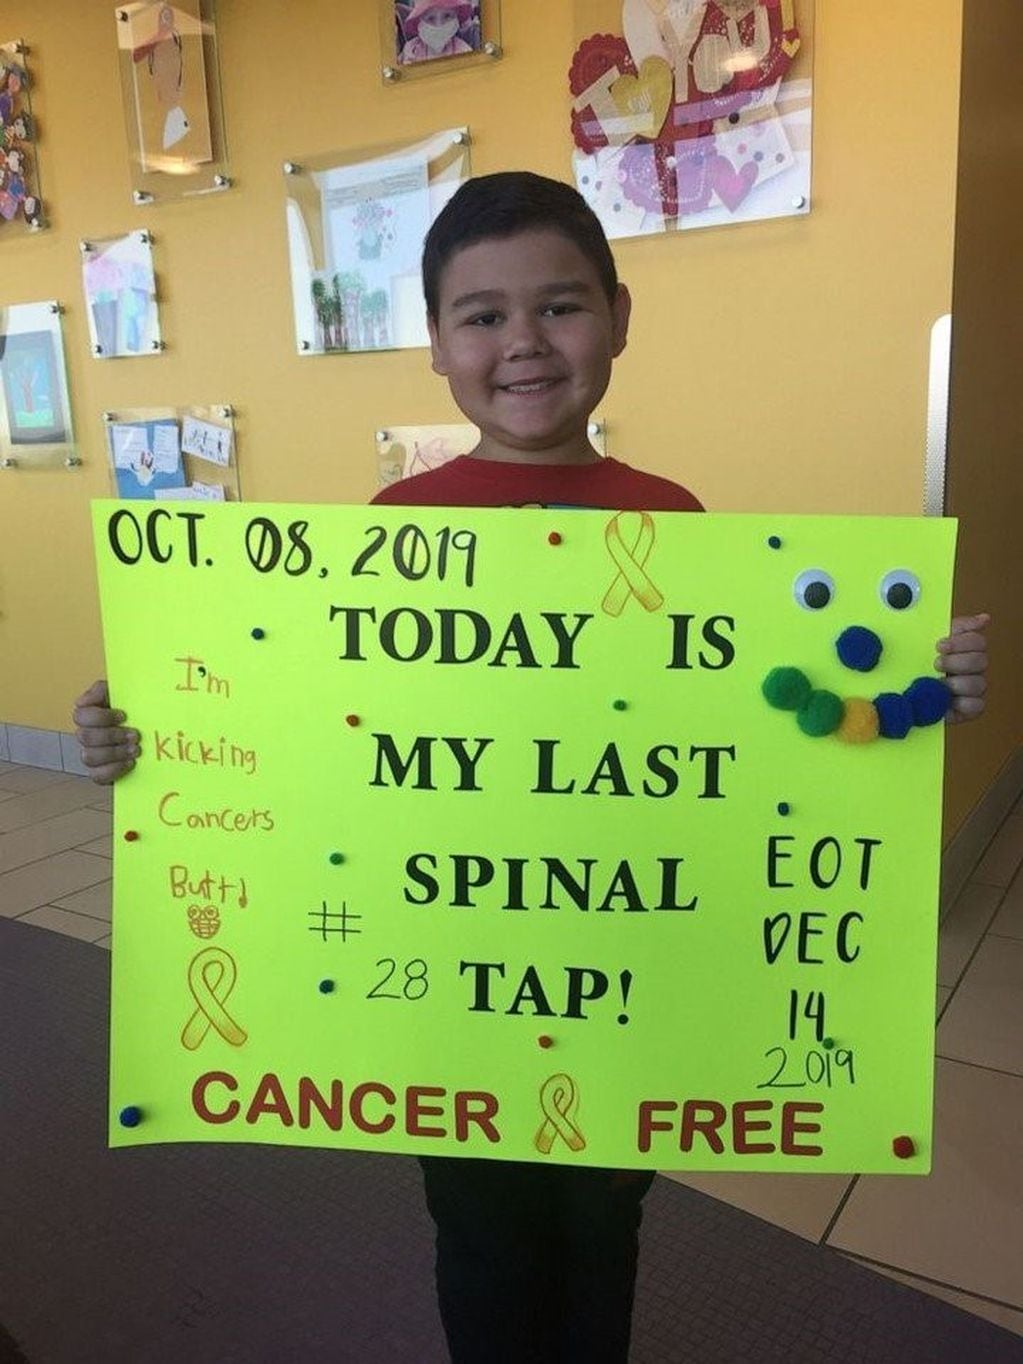 El emotivo video de un nene que festejó su derrota al cáncer